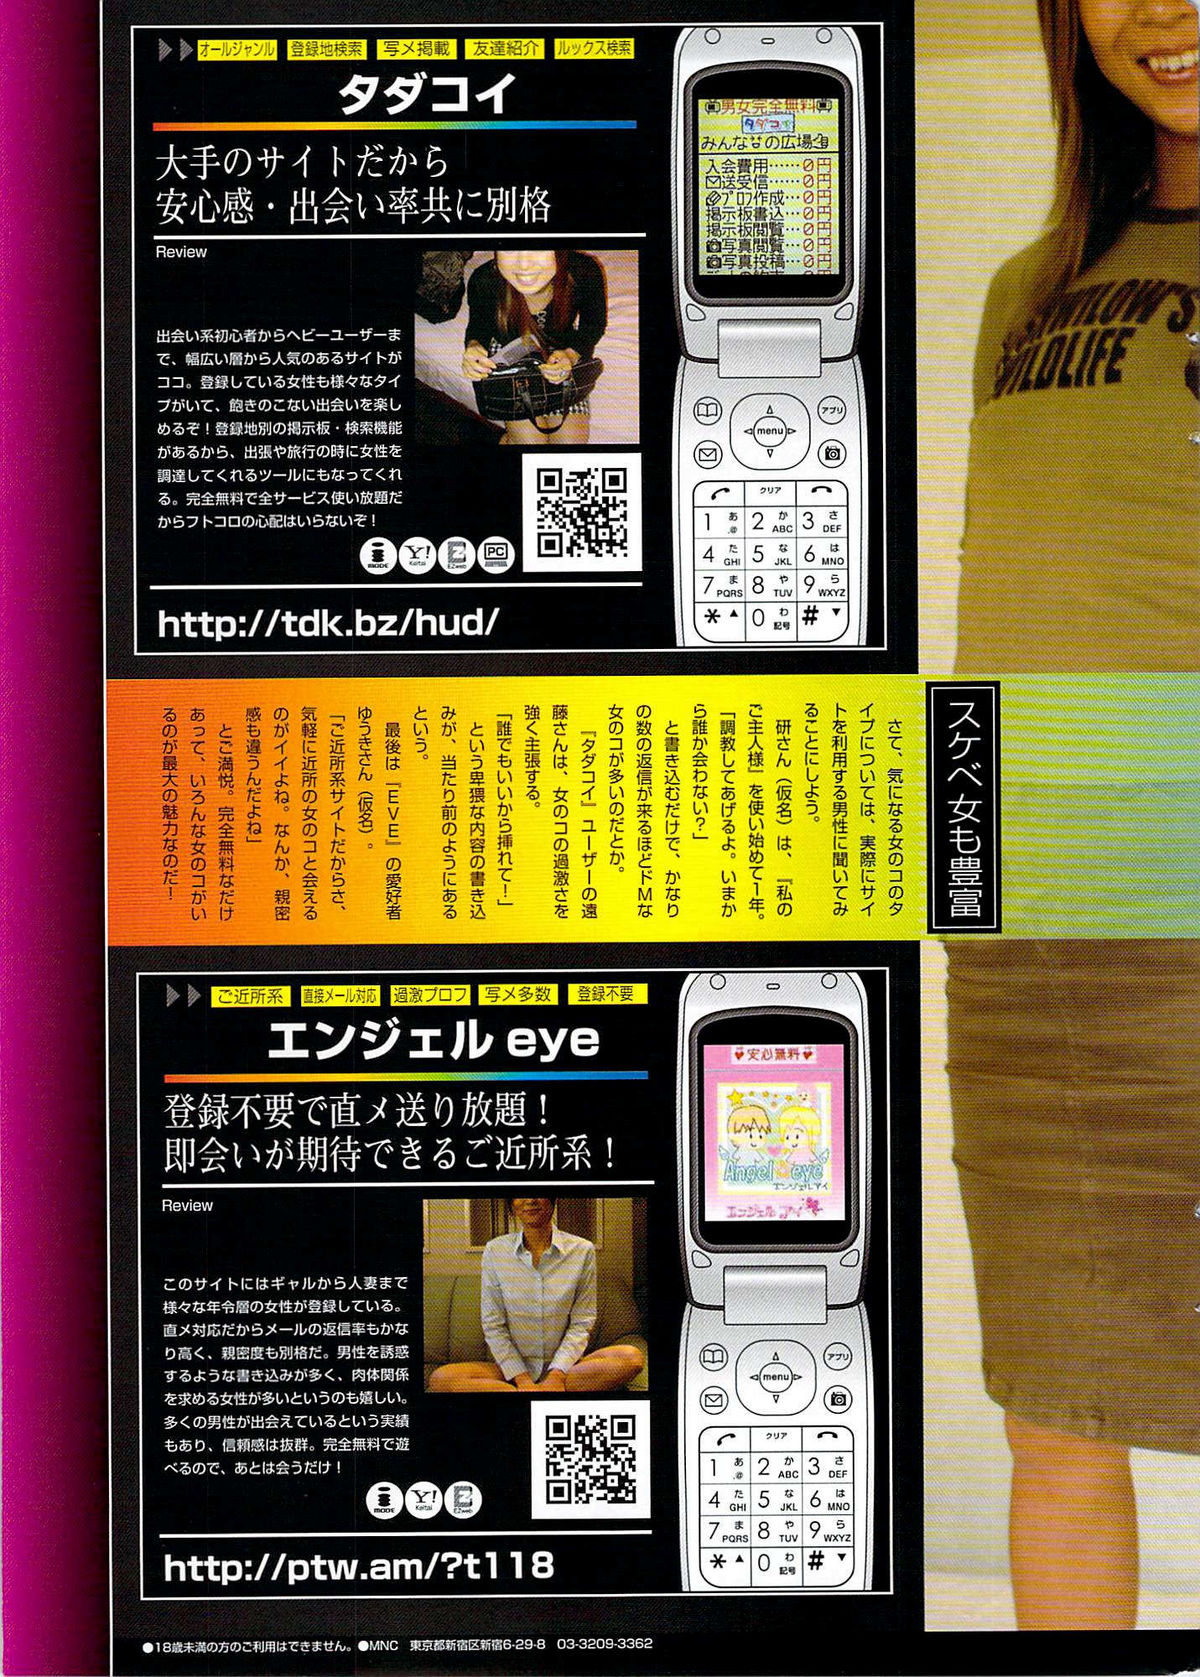 COMIC プルメロ 2007年06月号 vol.06